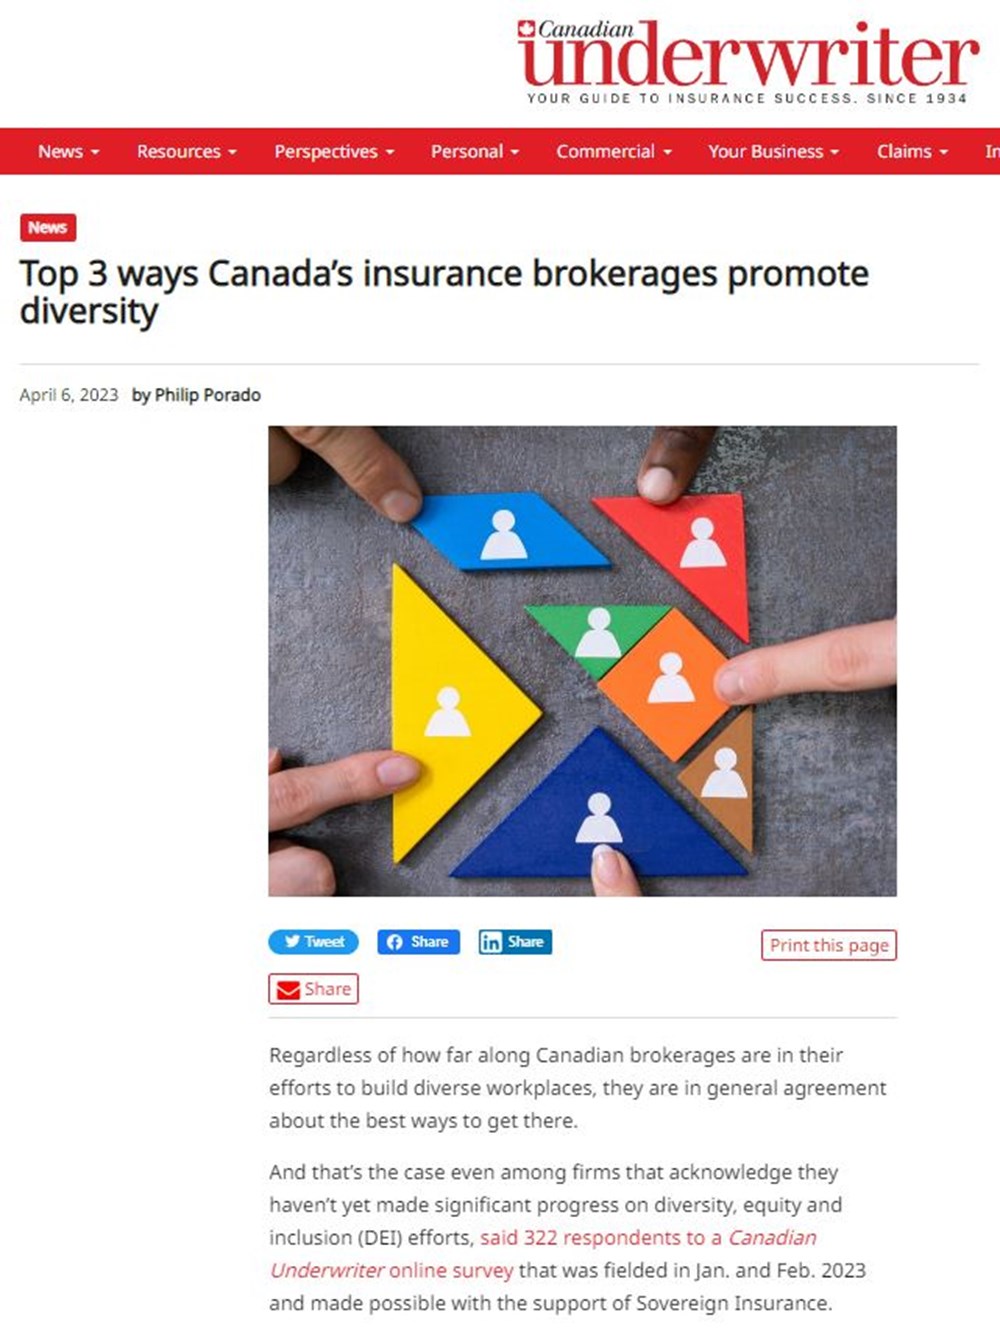 Capture d'écran de l'article paru dans le magazine Canadian Underwriter. On y voit des formes géométriques colorées avec des icônes de petites personnes sur chaque forme.